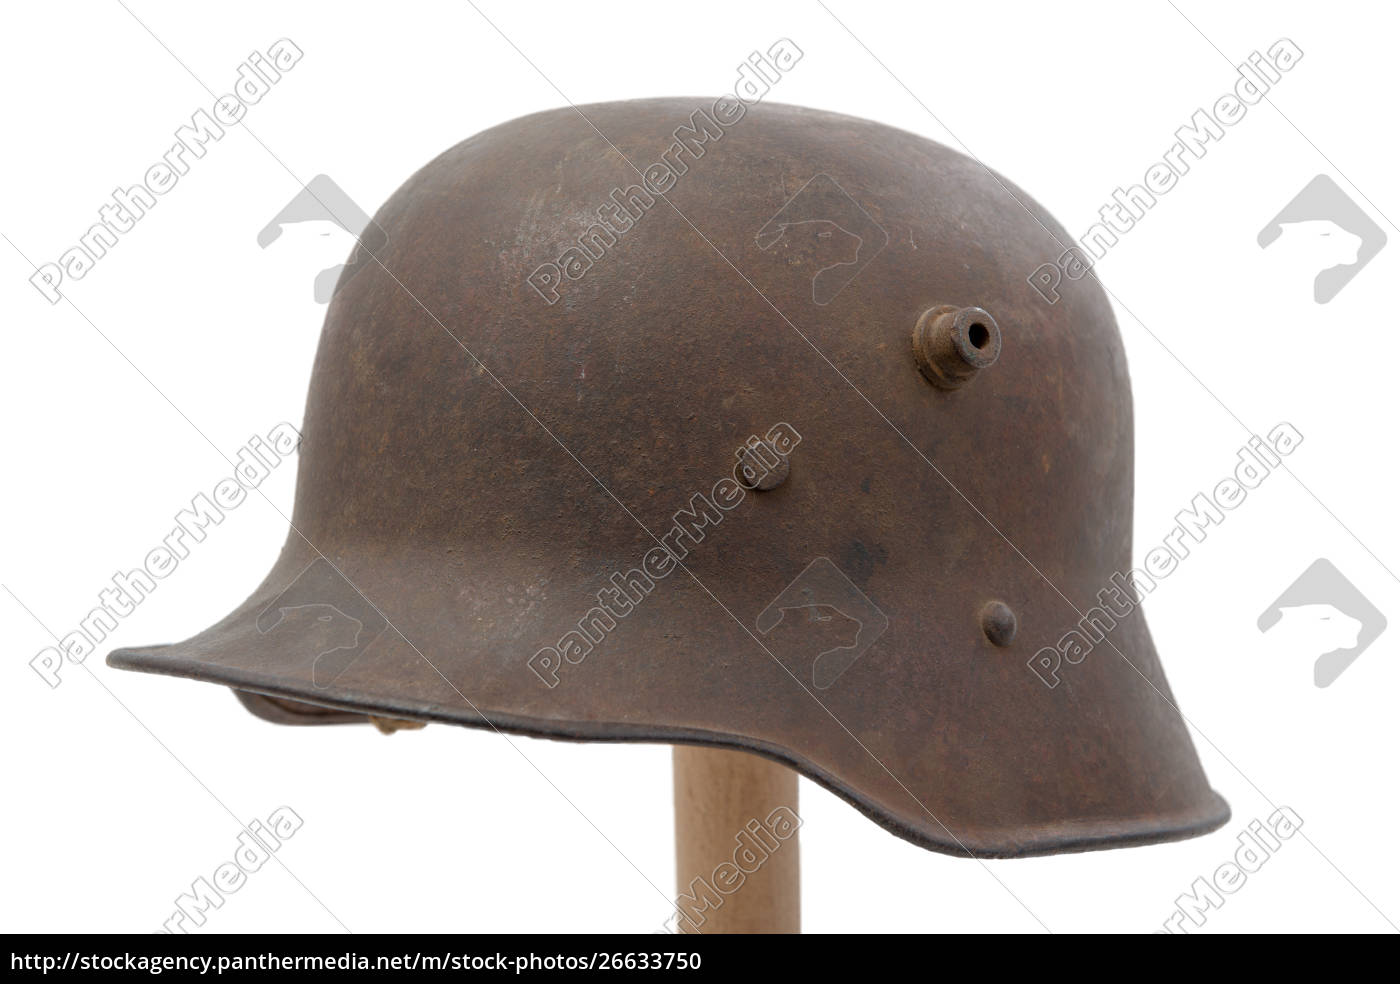 Elmetto militare tedesco della prima guerra mondiale - Stockphoto